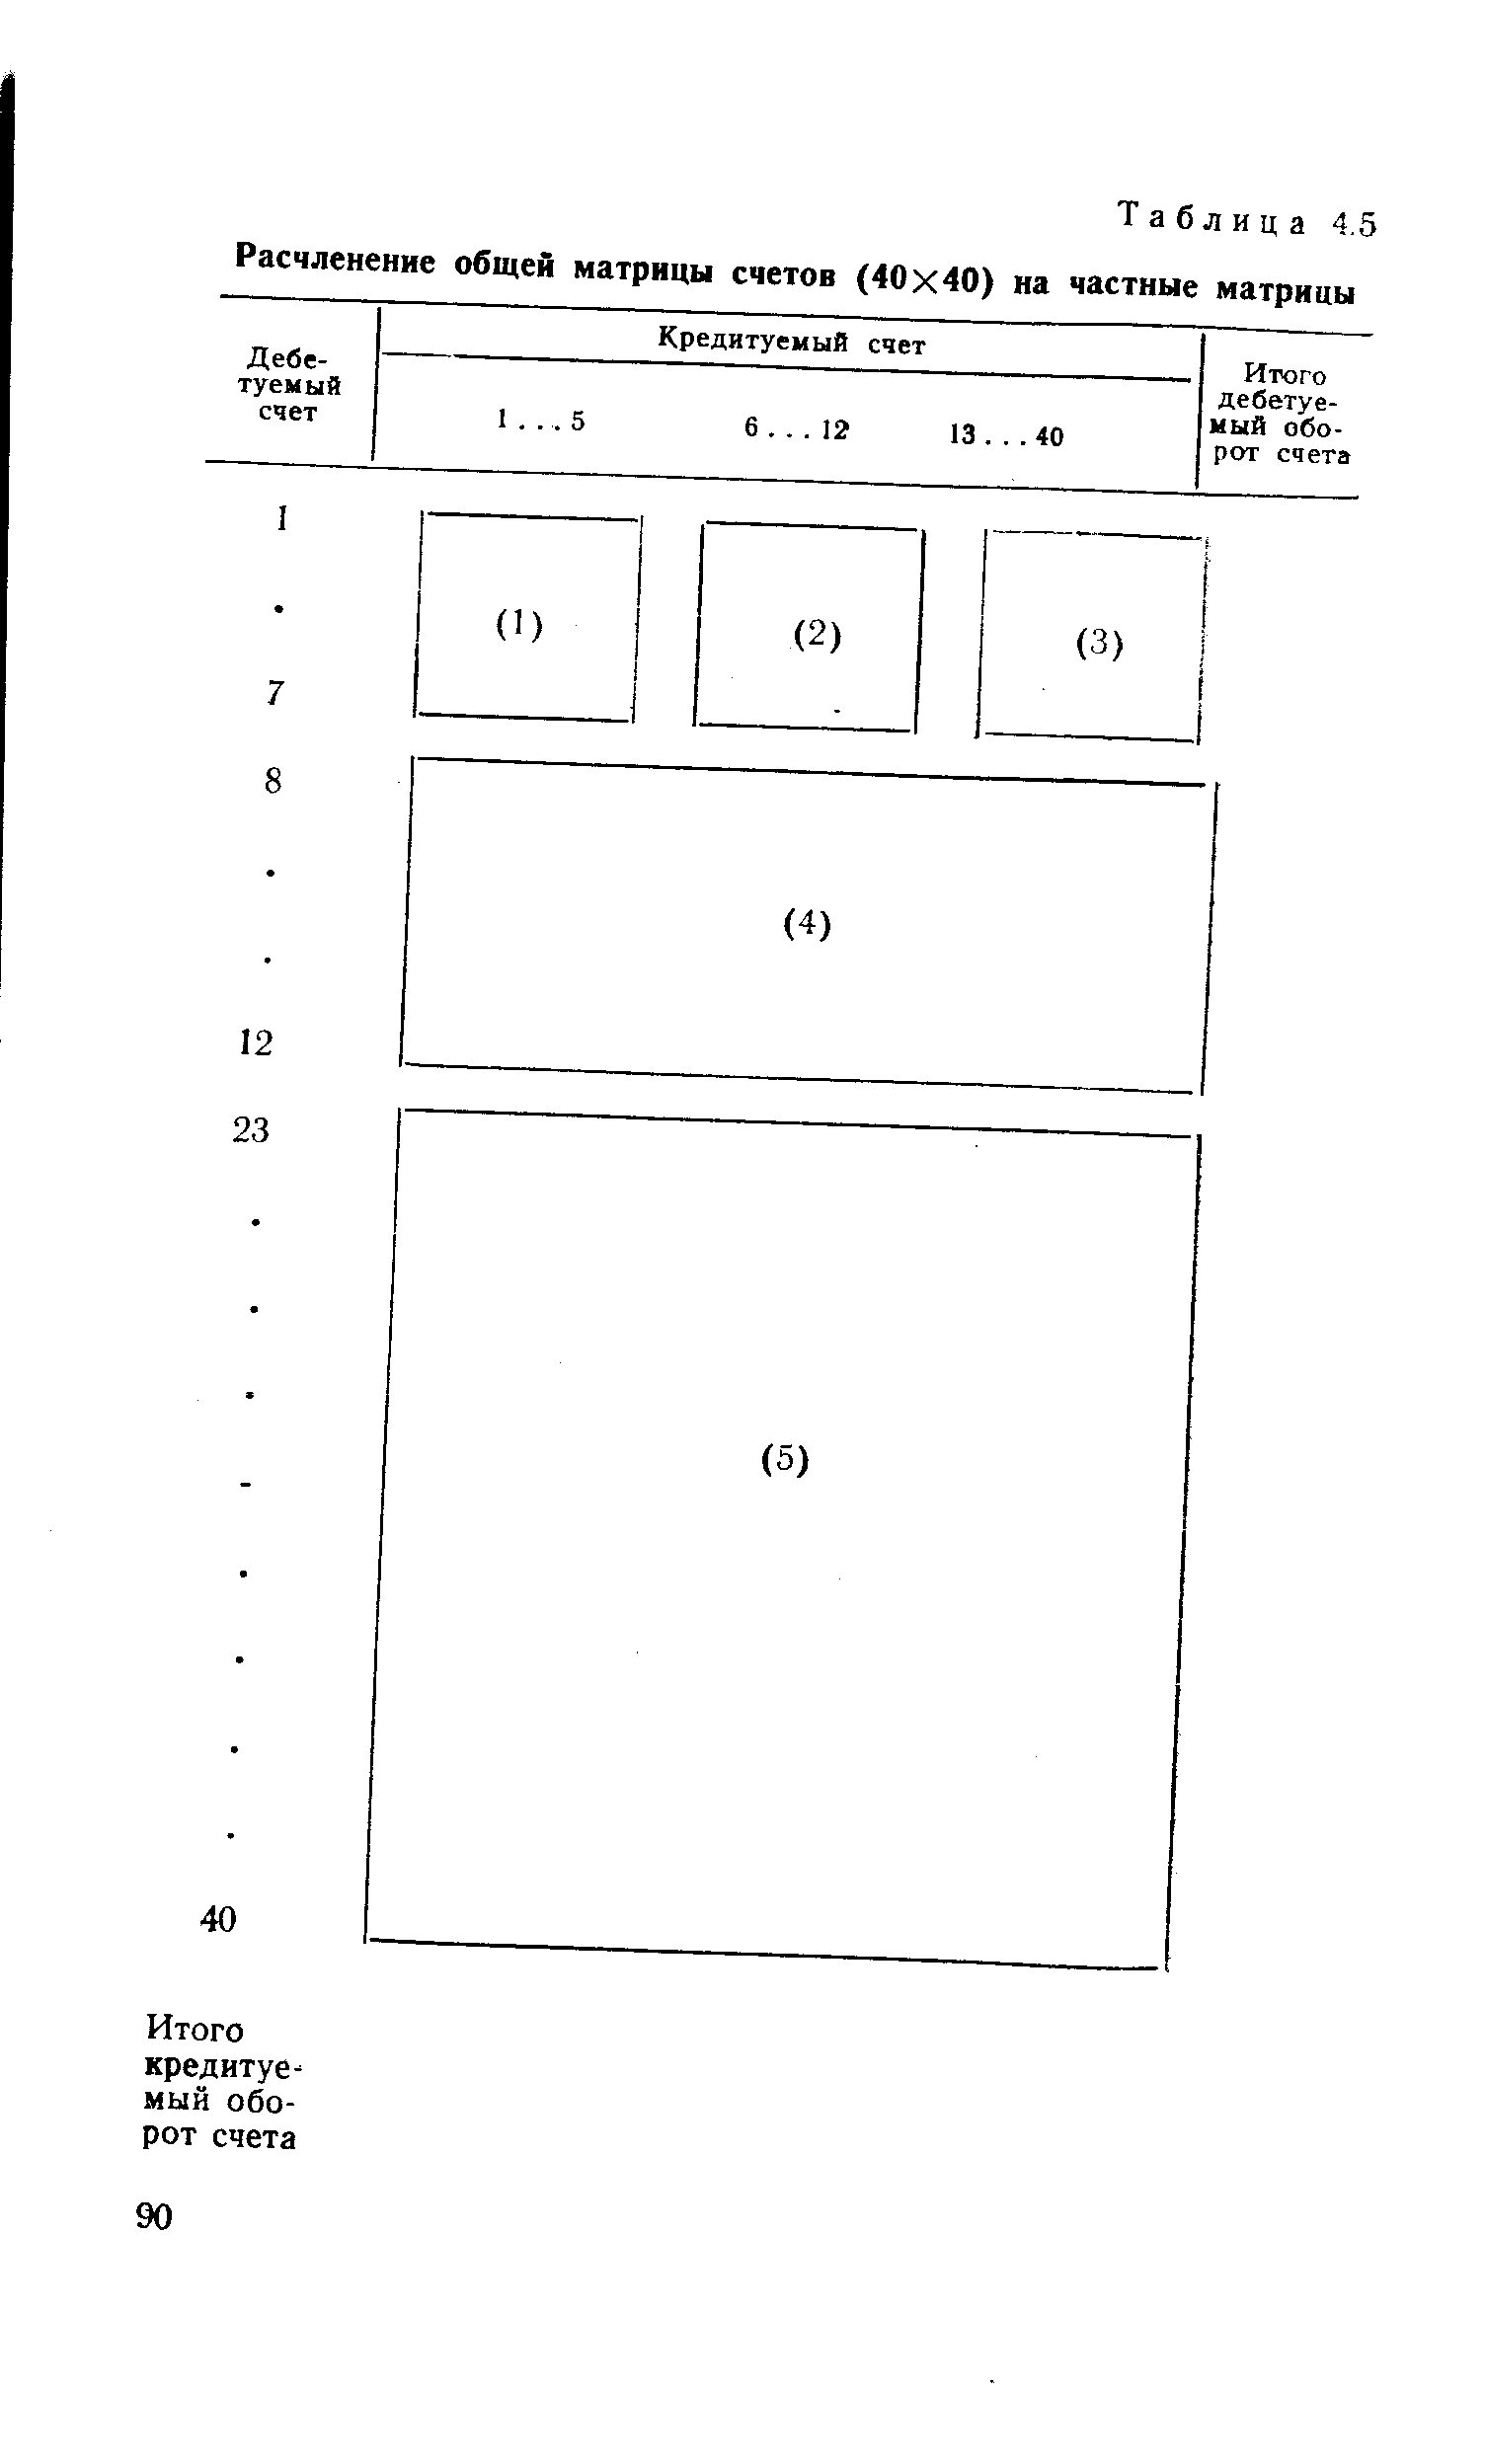 Таблица 4.5 Расчленение общей матрицы счетов (40x40) на частные матрицы
